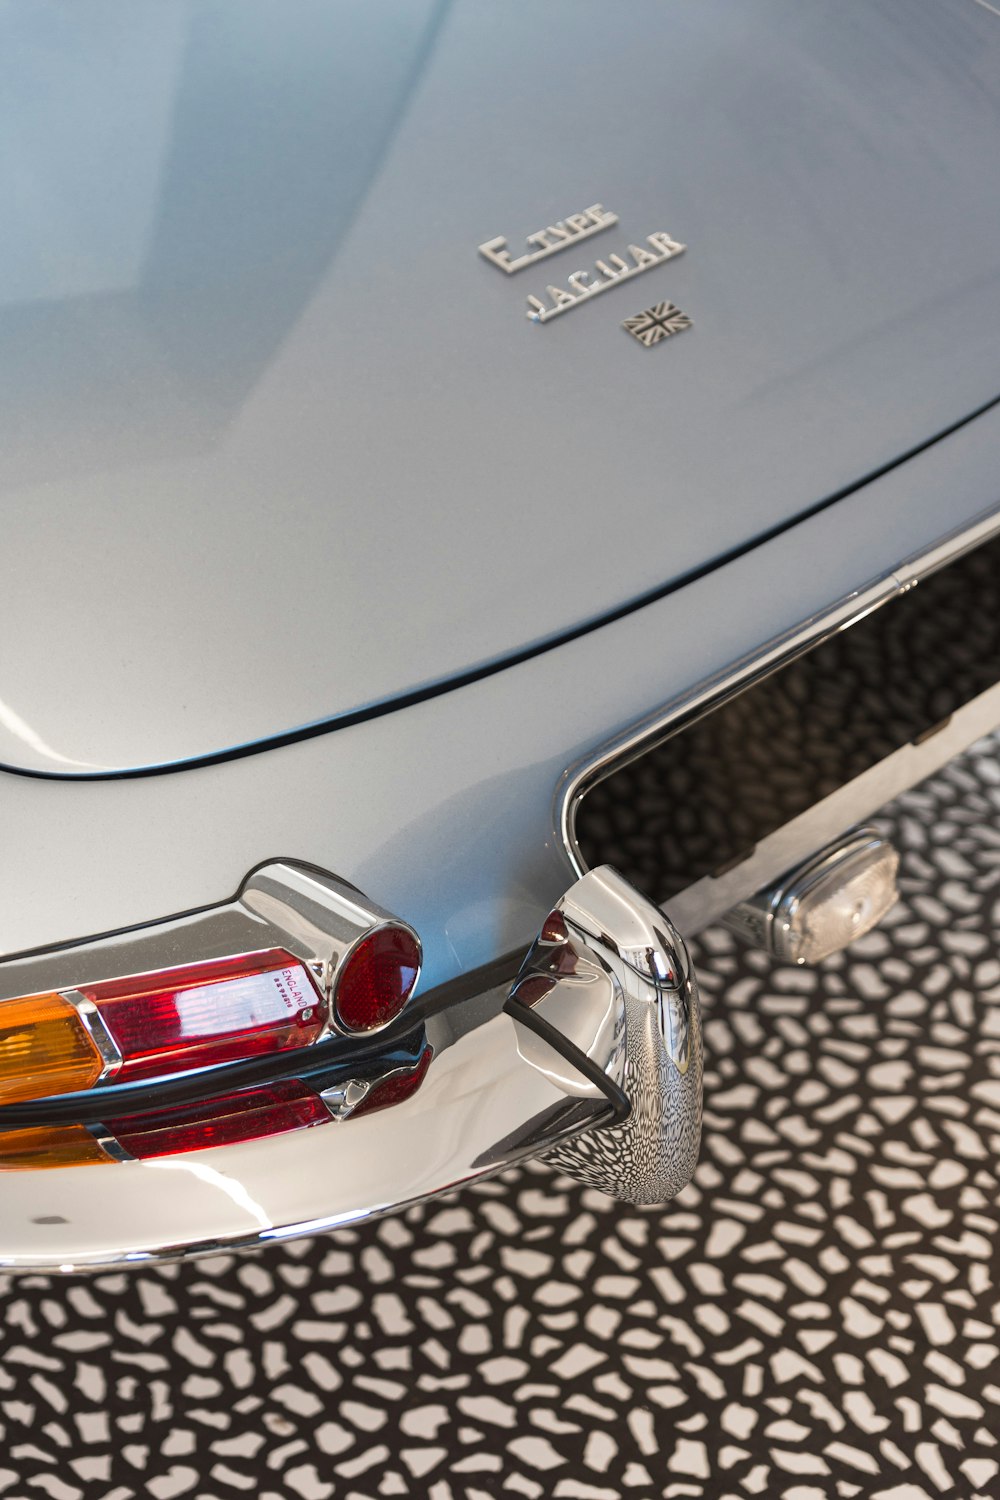 Coche Mercedes Benz plateado con estampado de leopardo blanco y negro